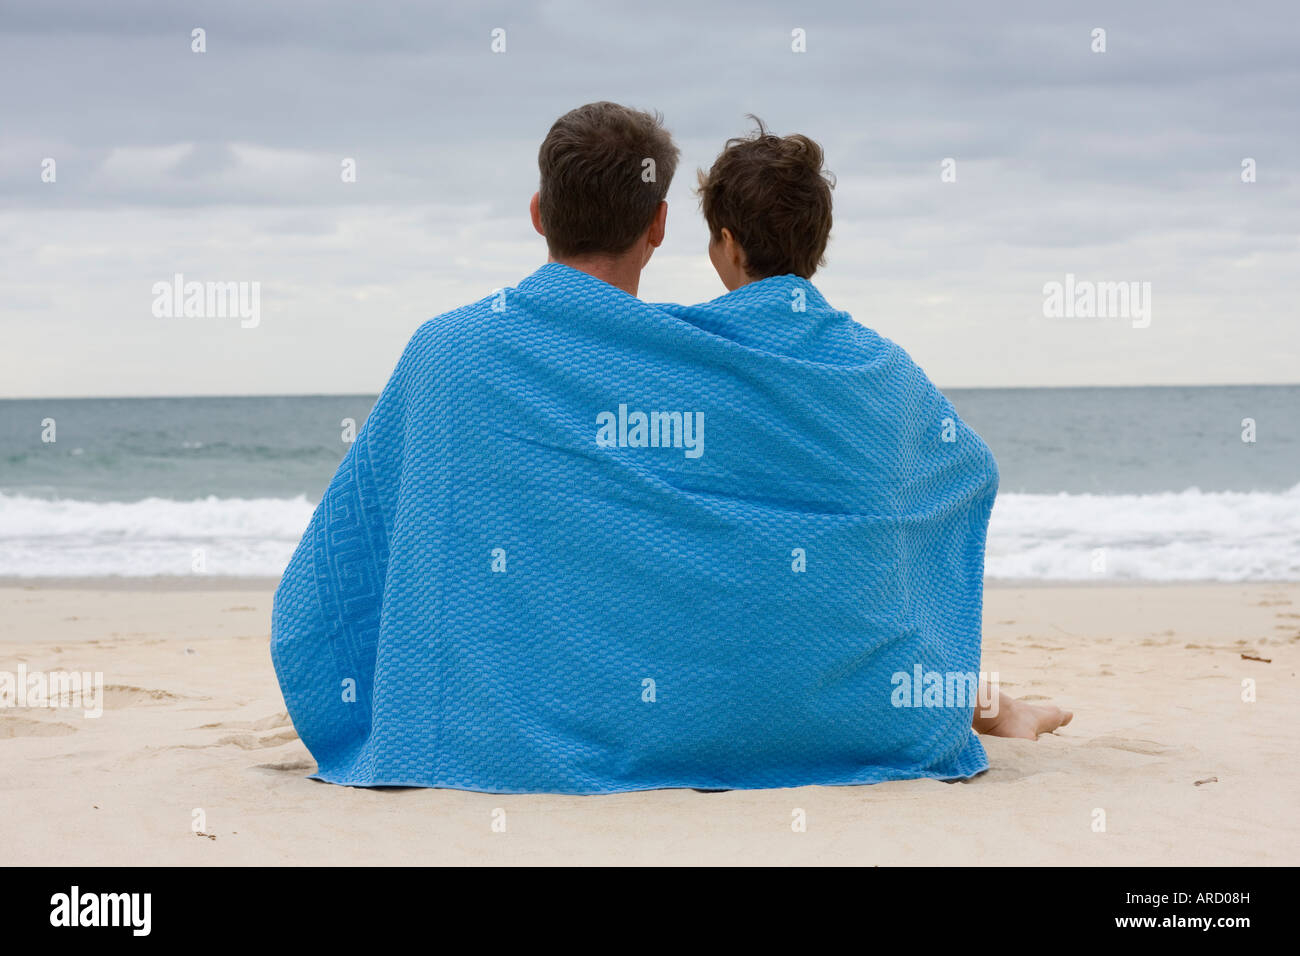 Giovane seduto sulla spiaggia con un asciugamano blu Foto Stock